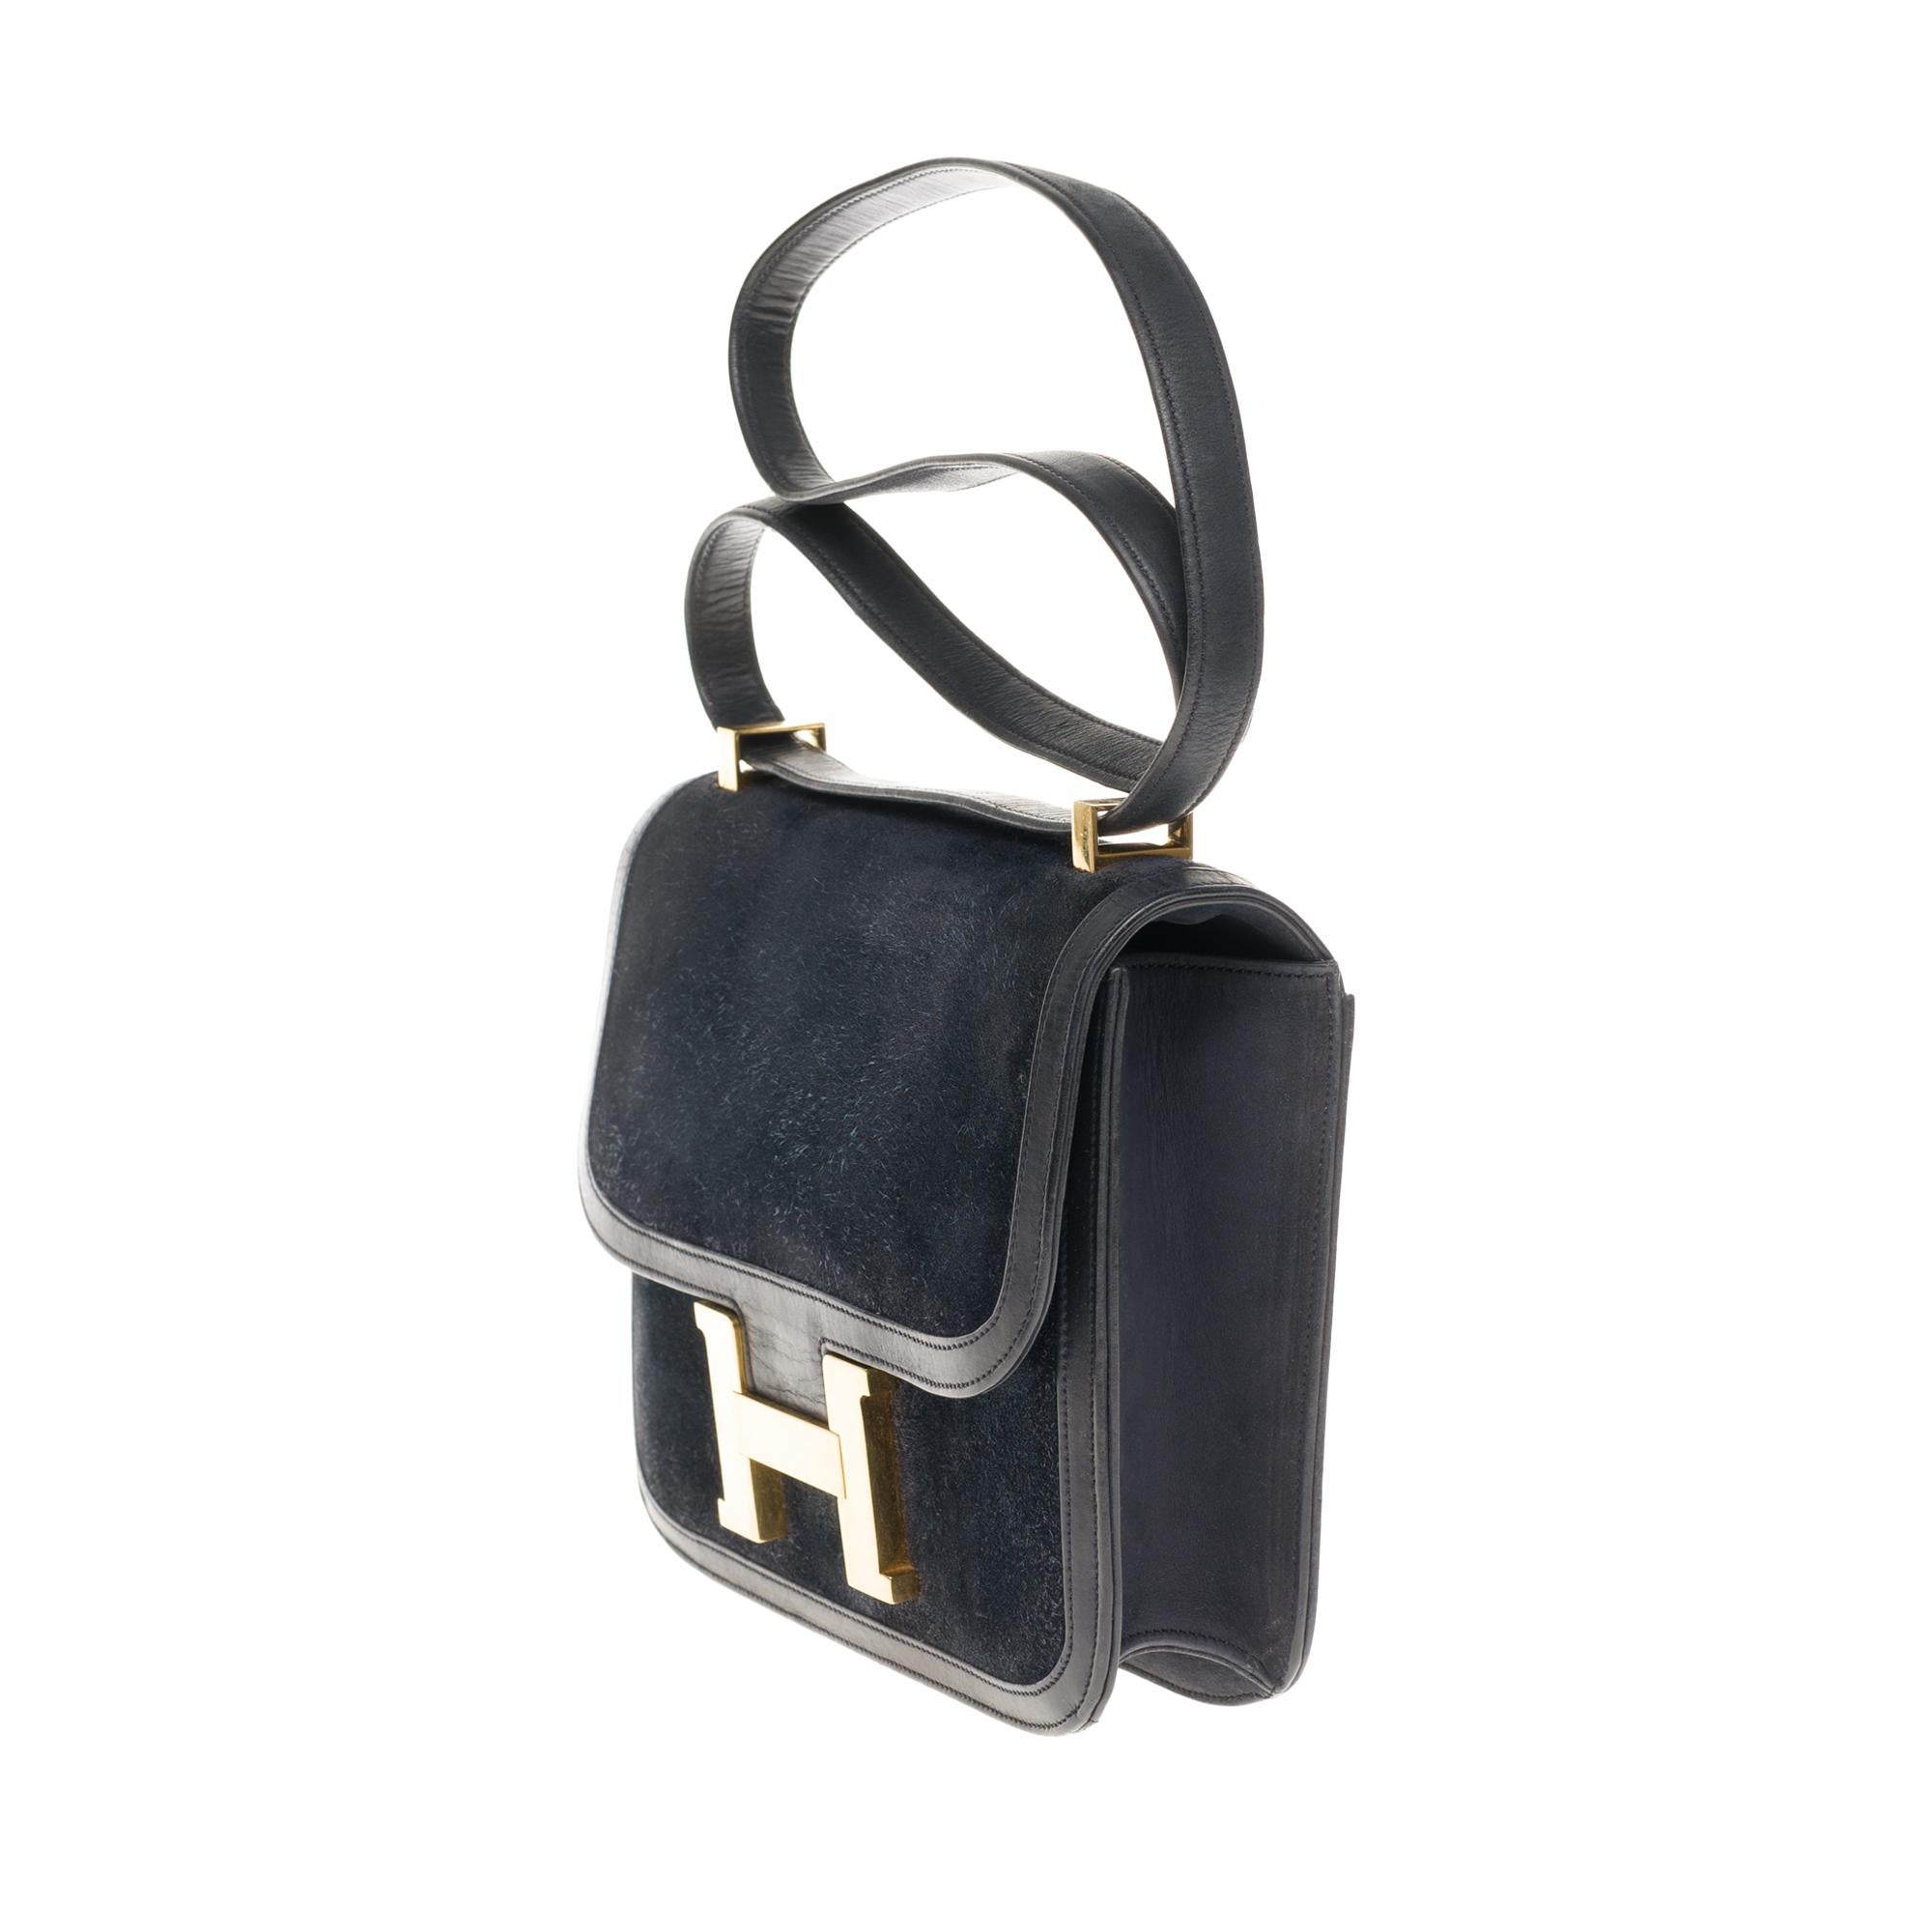 Black VERY RARE Hermes Constance  DOBLIS shoulder bag in Navy blue Gold hardware!